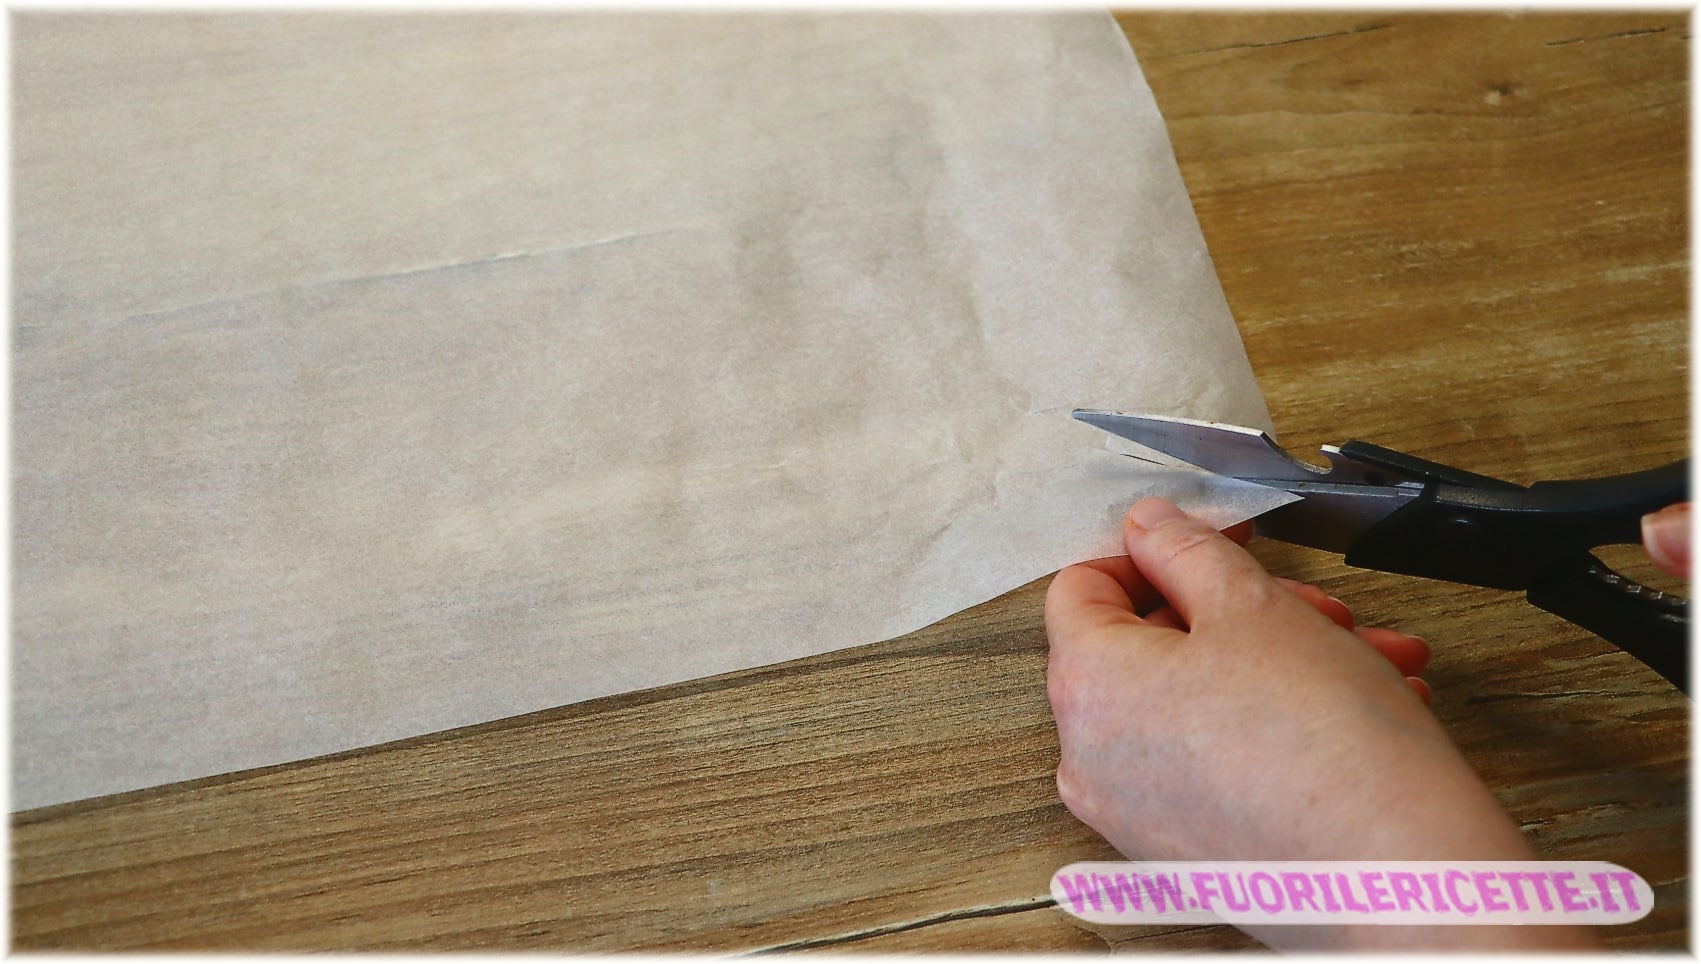 Tagliare una quantità di carta che permetta di foderare anche i bordi